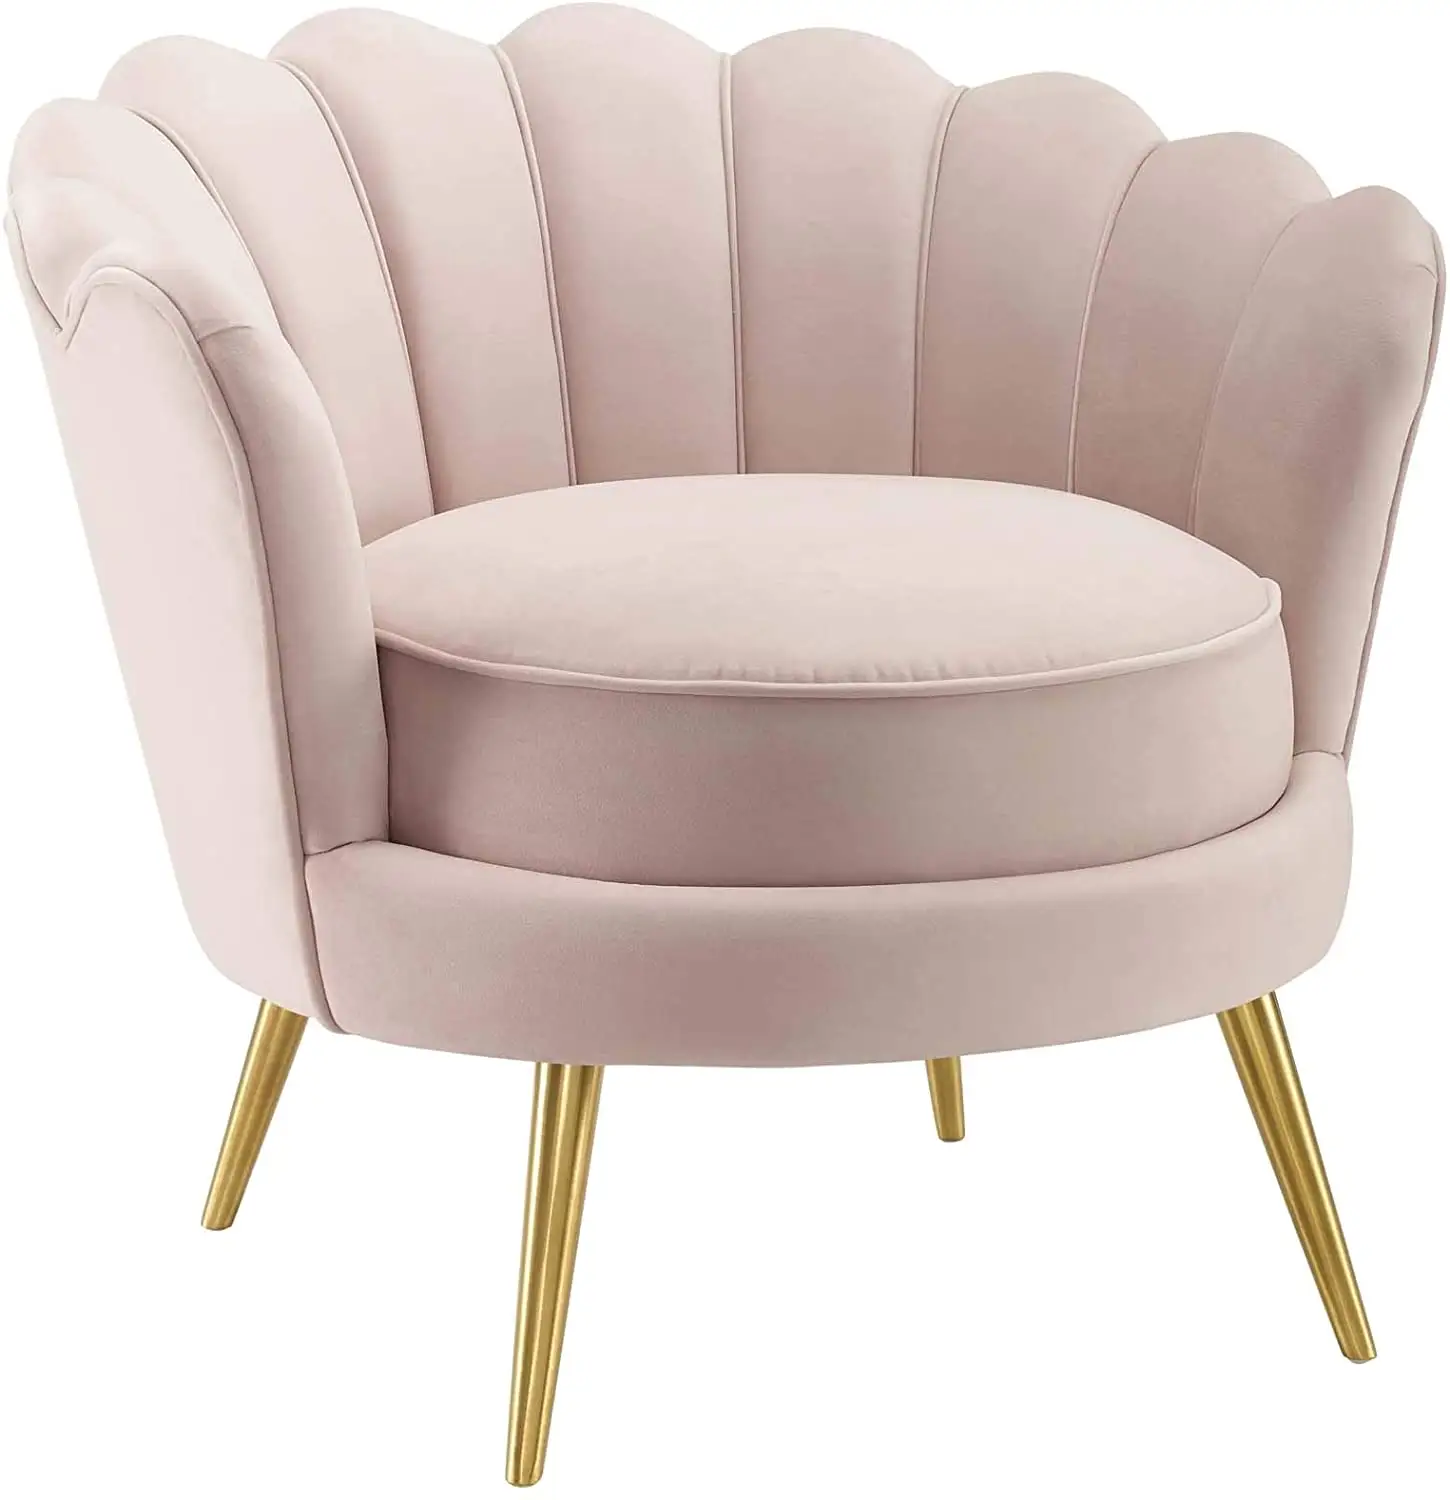 Vendita calda all'ingrosso di alta qualità moderno soggiorno morbido tessuto chaise sedia in velluto